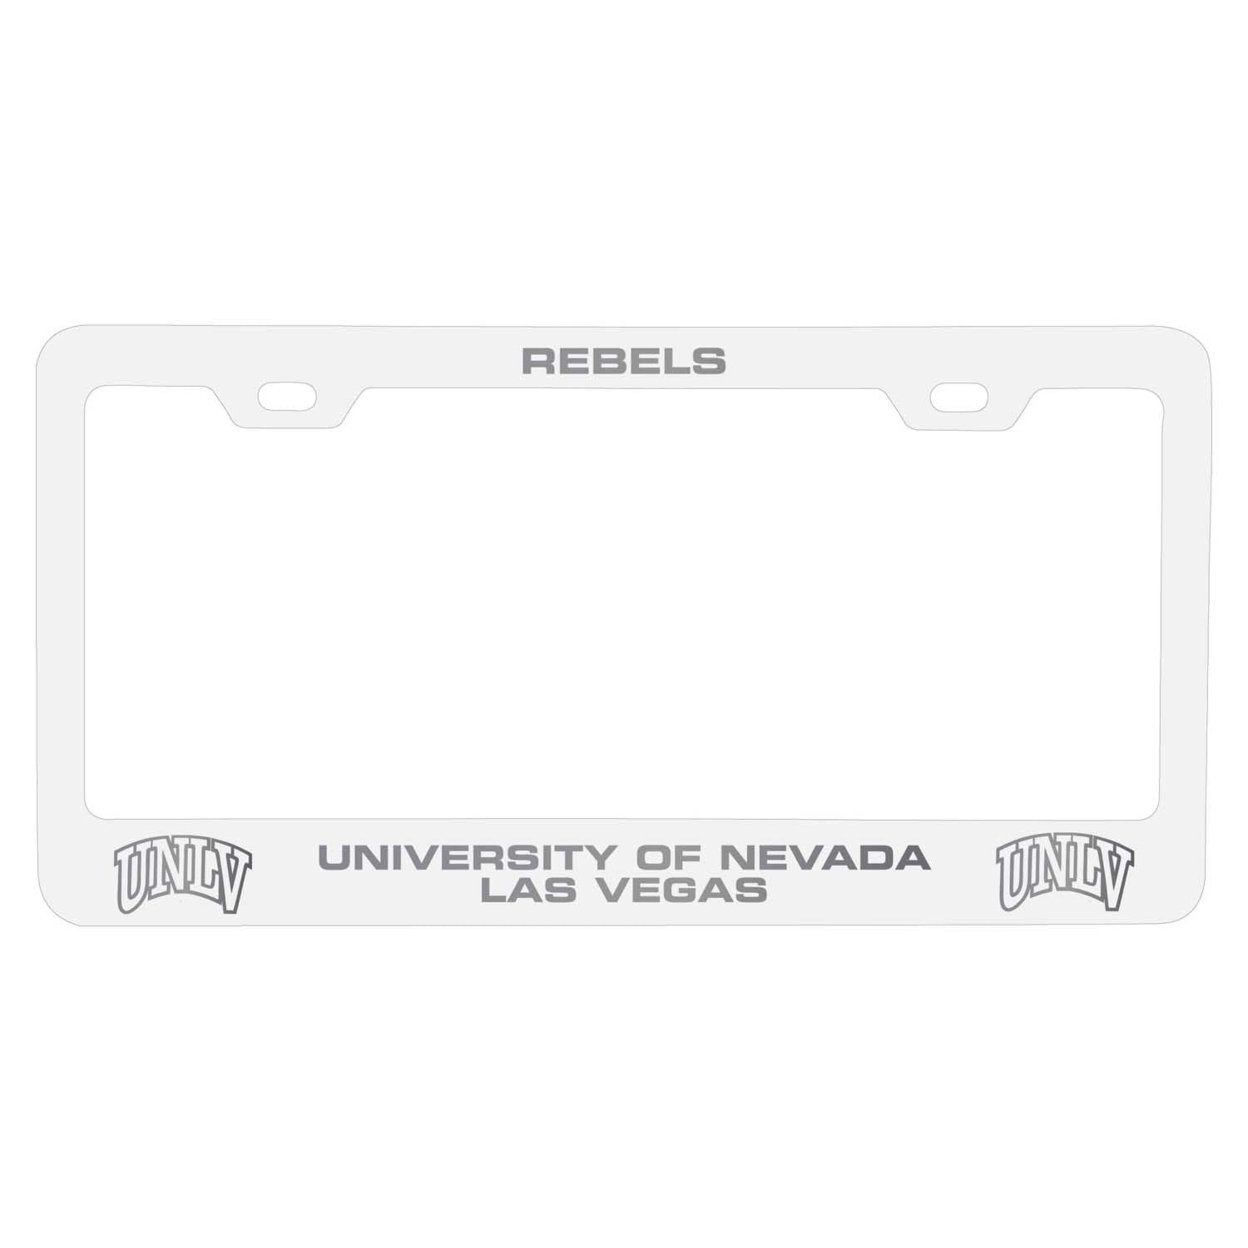 UNLV Rebels Laser Engraved Metal License Plate Frame - Choose Your Color - White